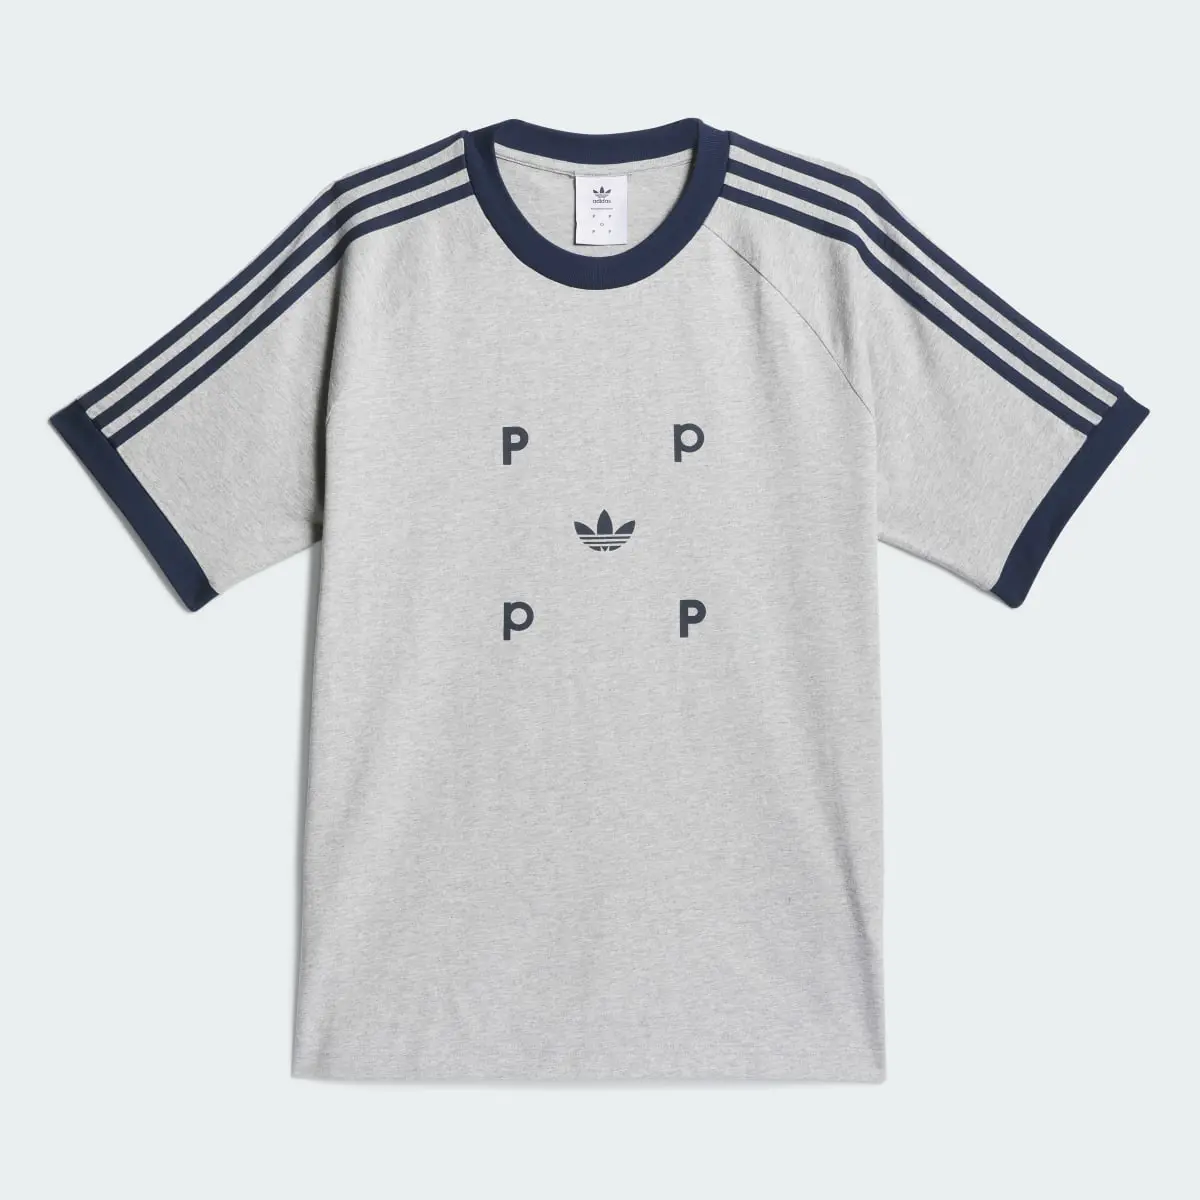 Adidas Camiseta Pop Classic. 2